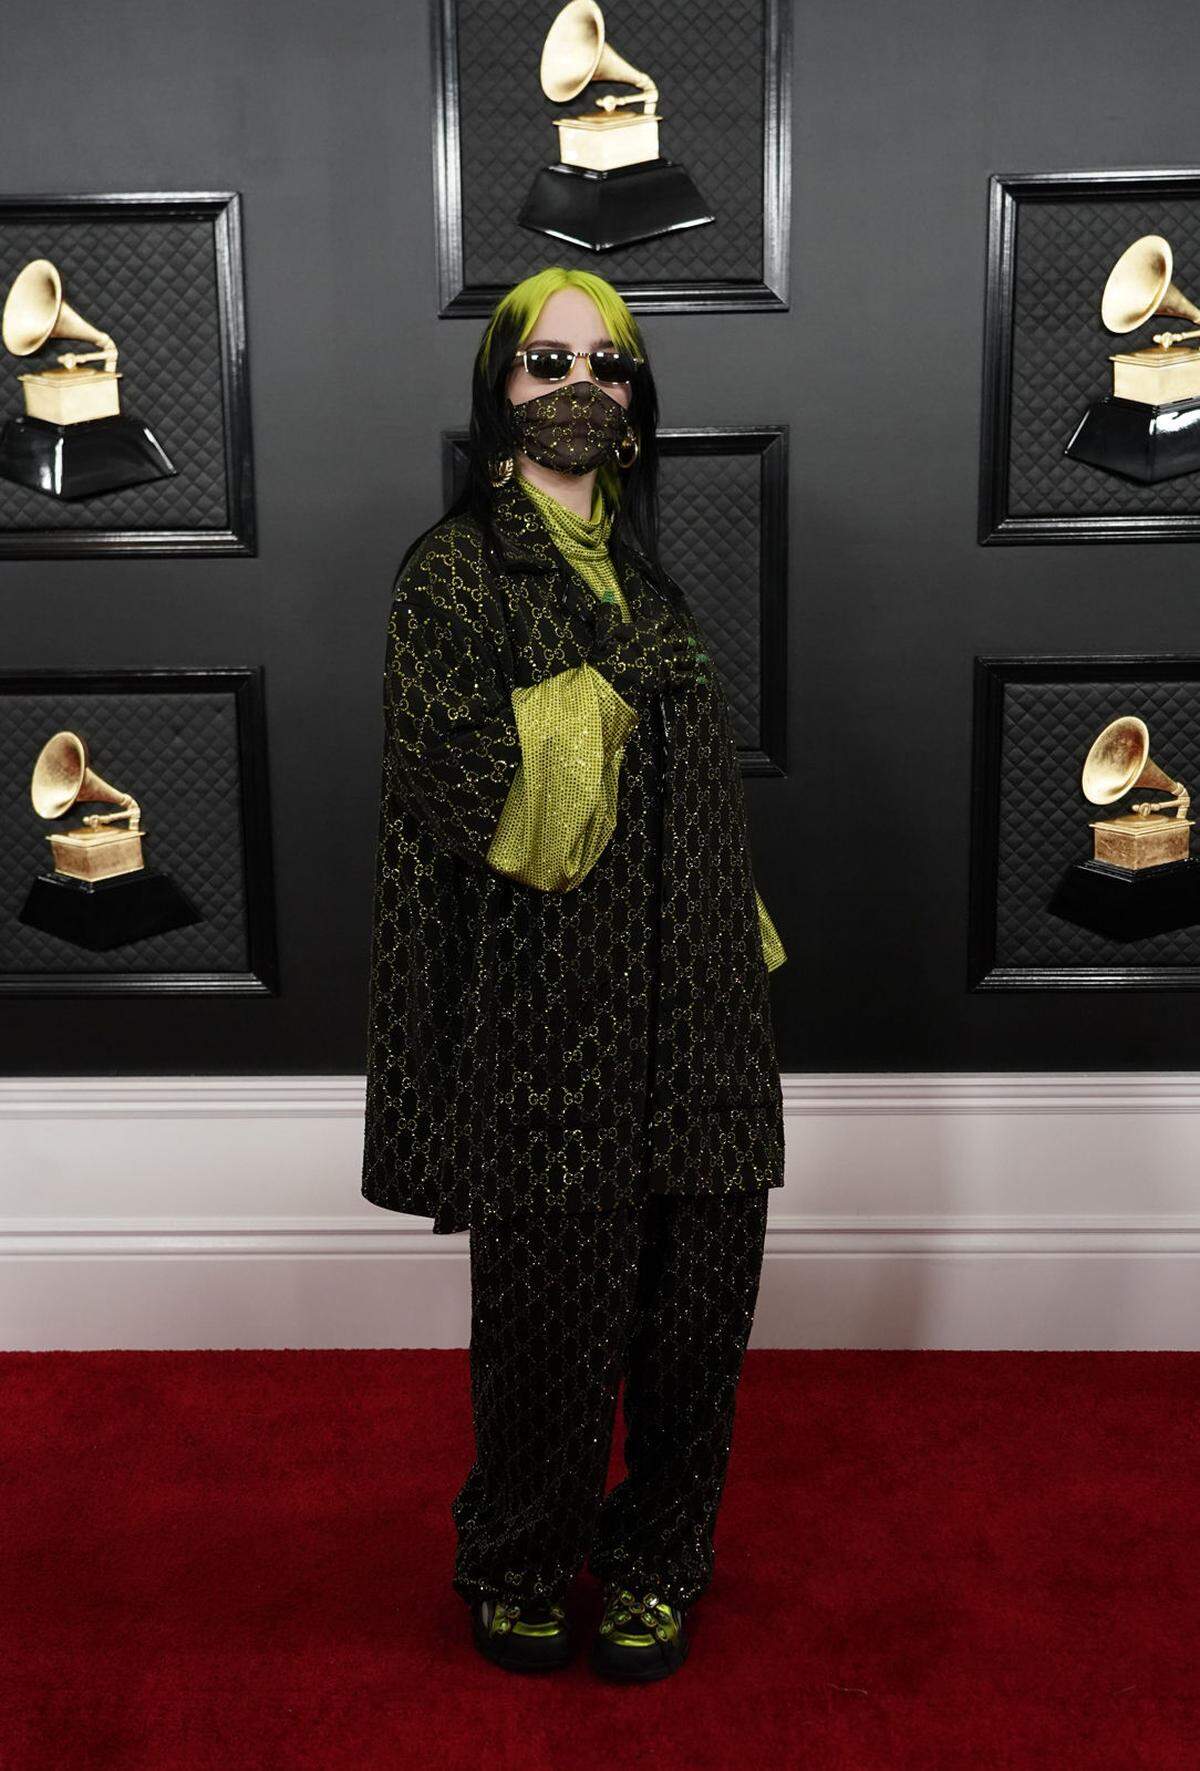 Das Gucci-Outfit samt Maske bei den Grammy Awards verhalf auch Kollegin Billie Eilish auf die Rangliste.